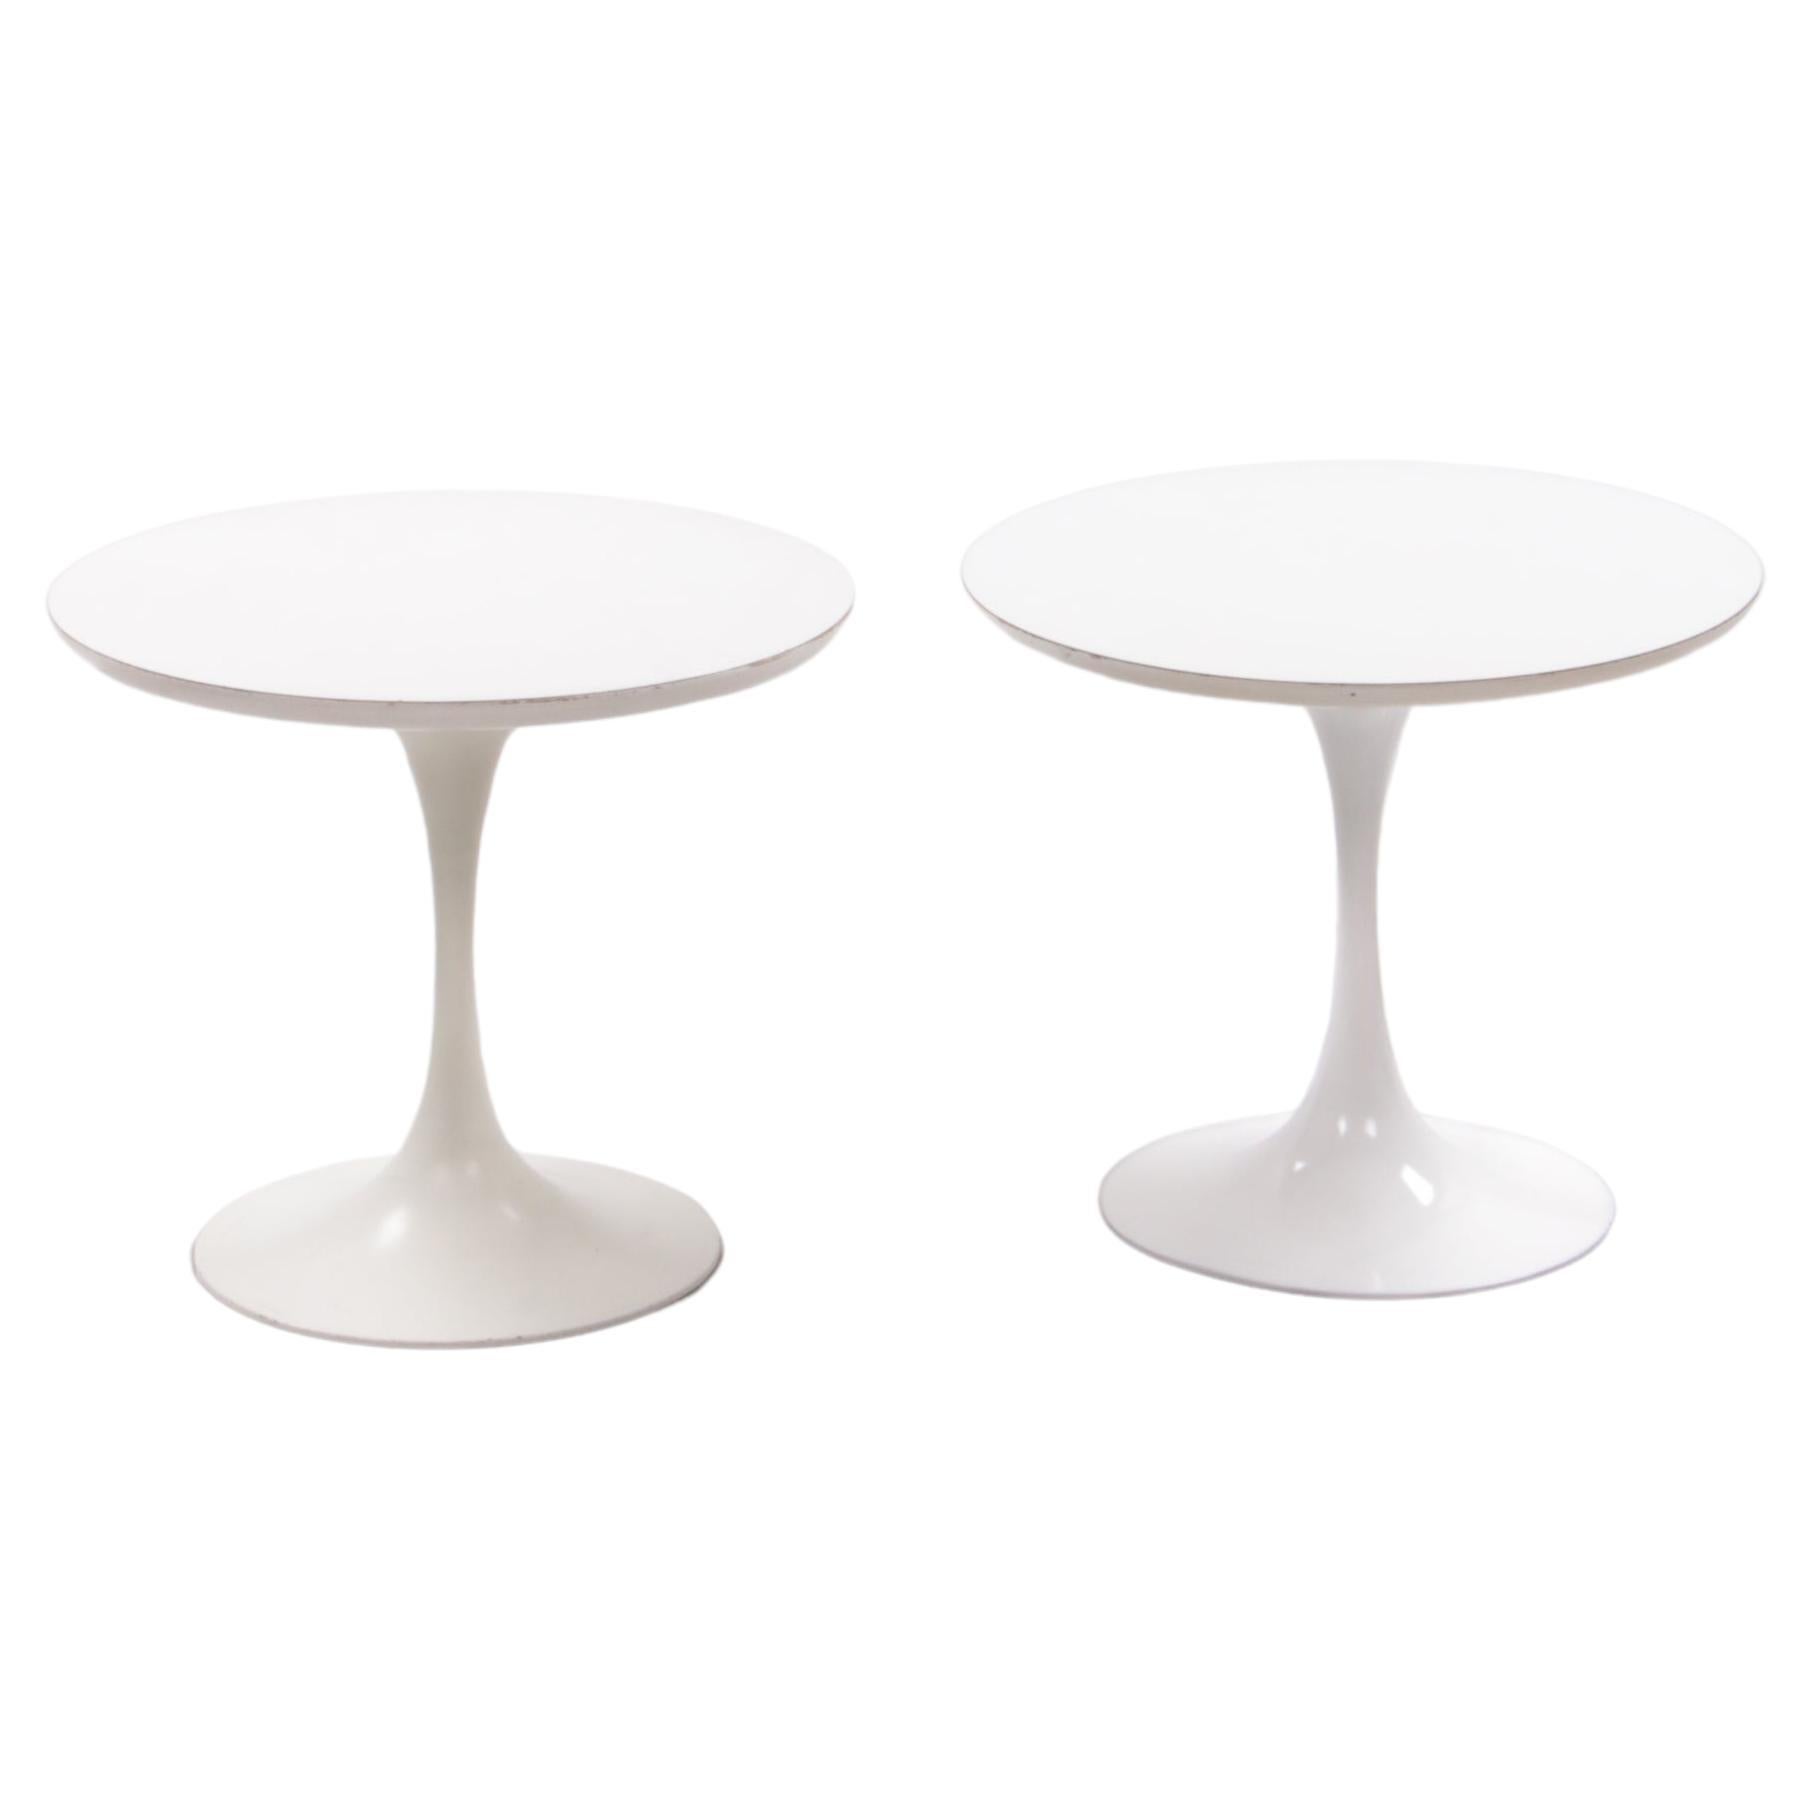 Set of side tables Model "Tulip", design Eero Saarinen made by Arkana, 1960